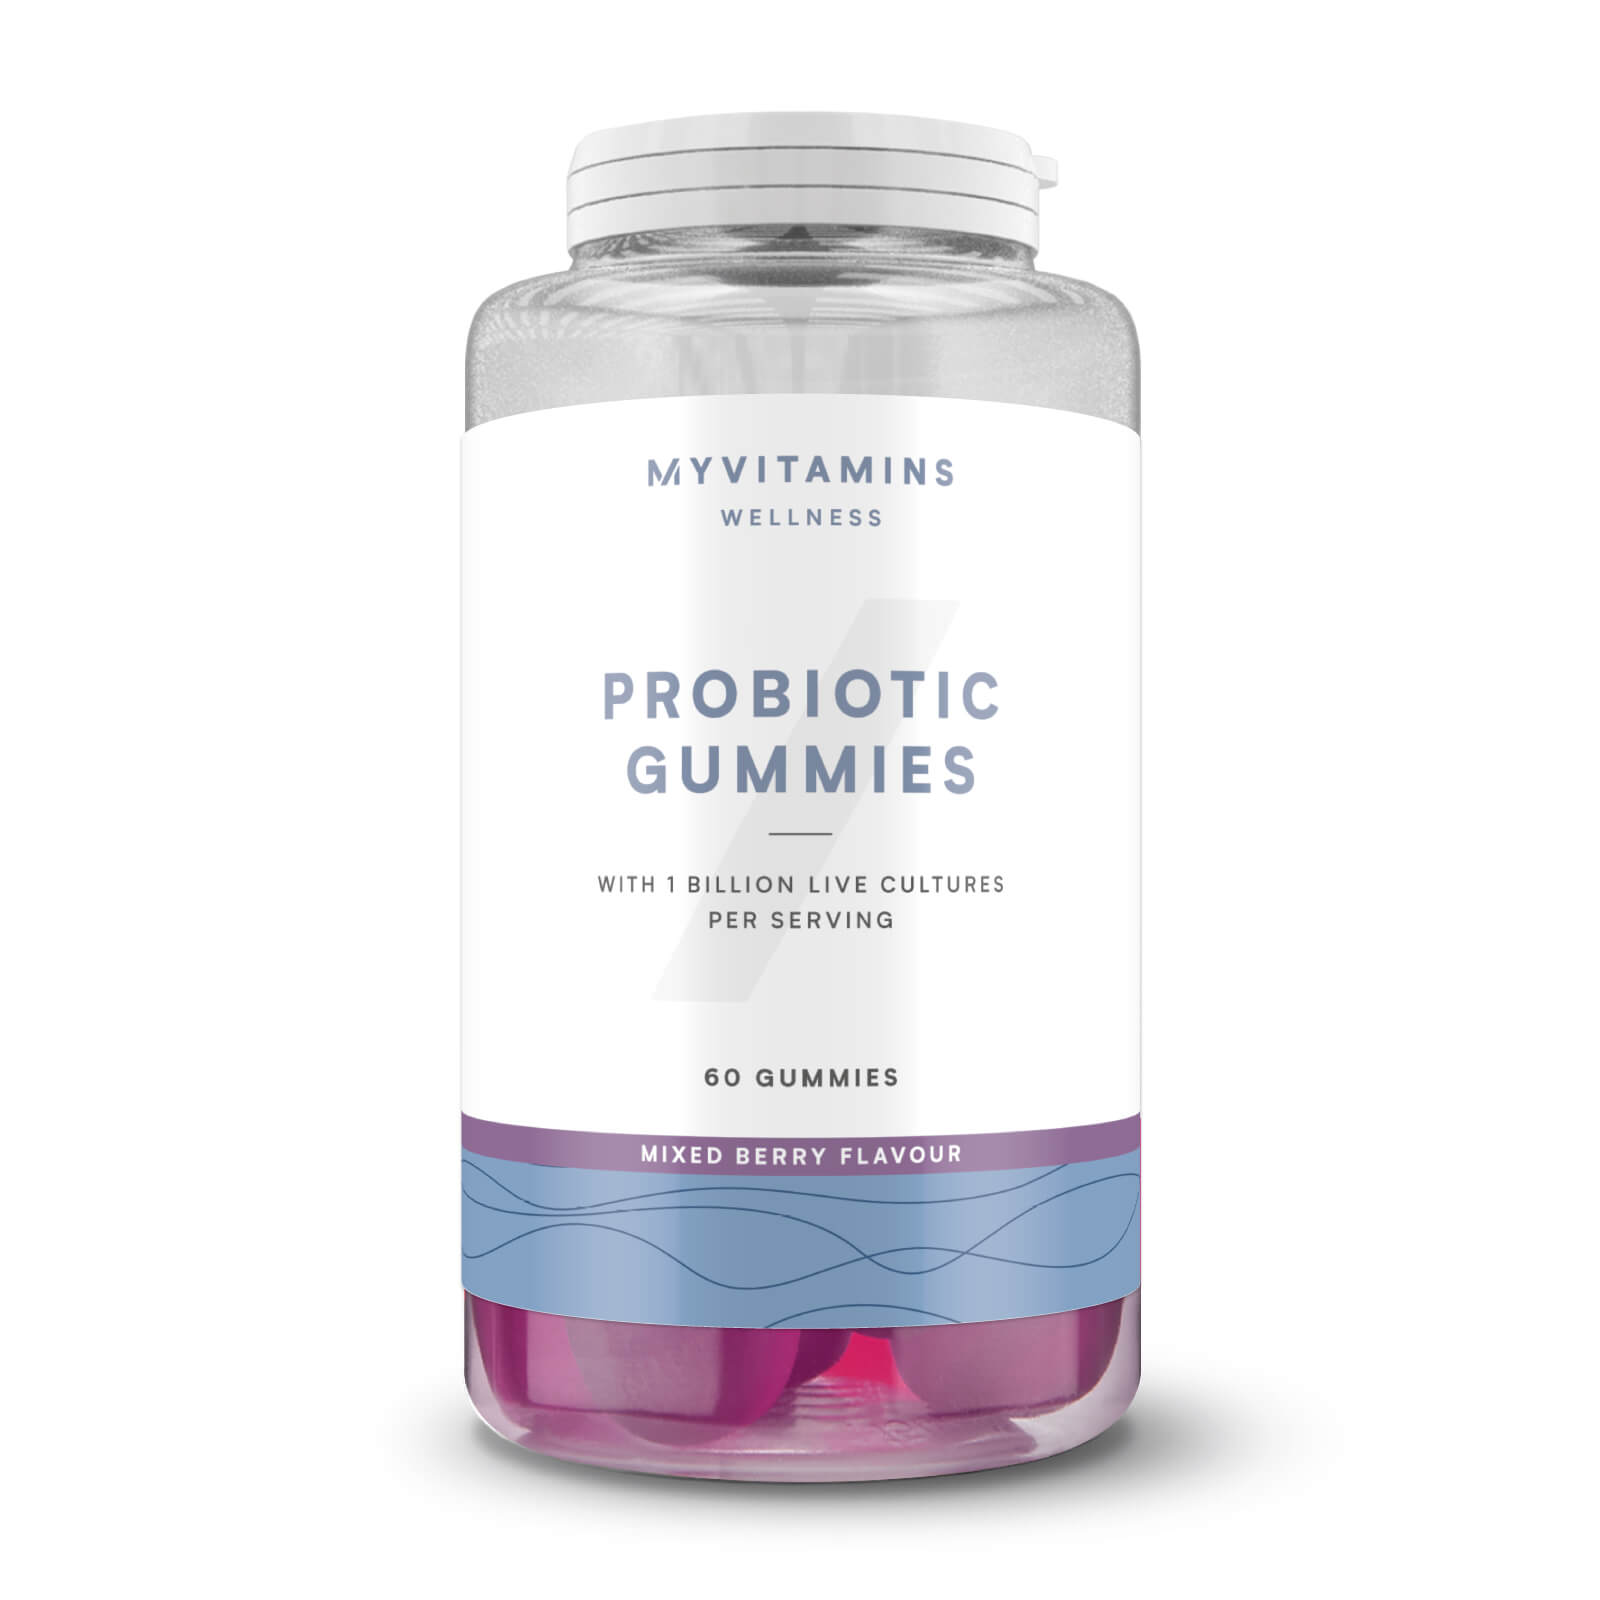 Myvitamins Probiotic Gummies - 60servings - Quả mọng hỗn hợp